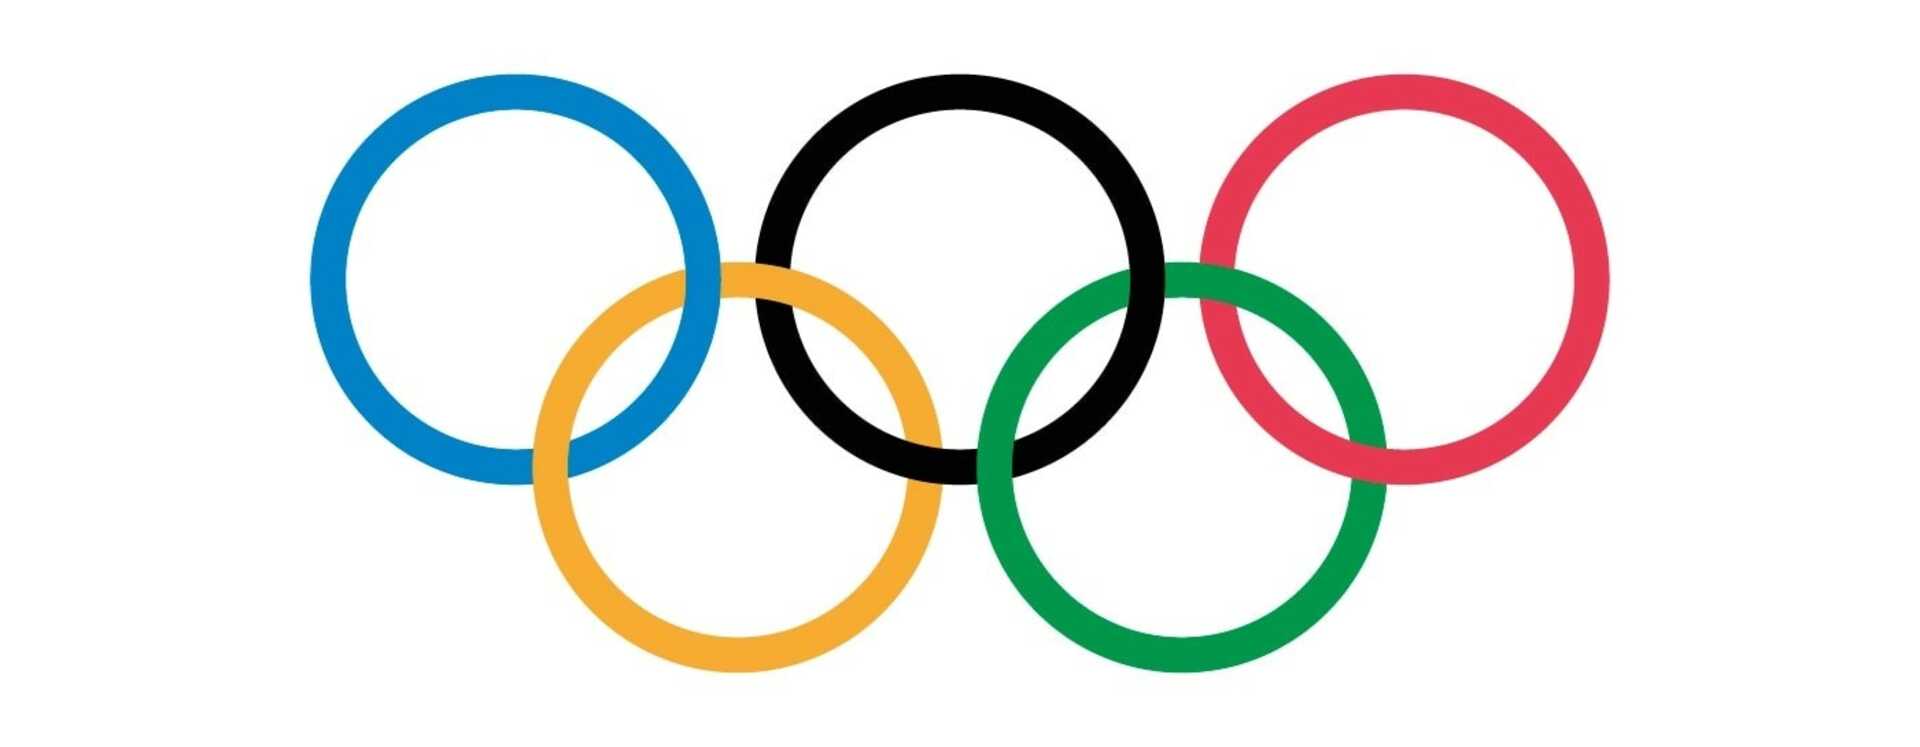 Олимпийские кольца цвета